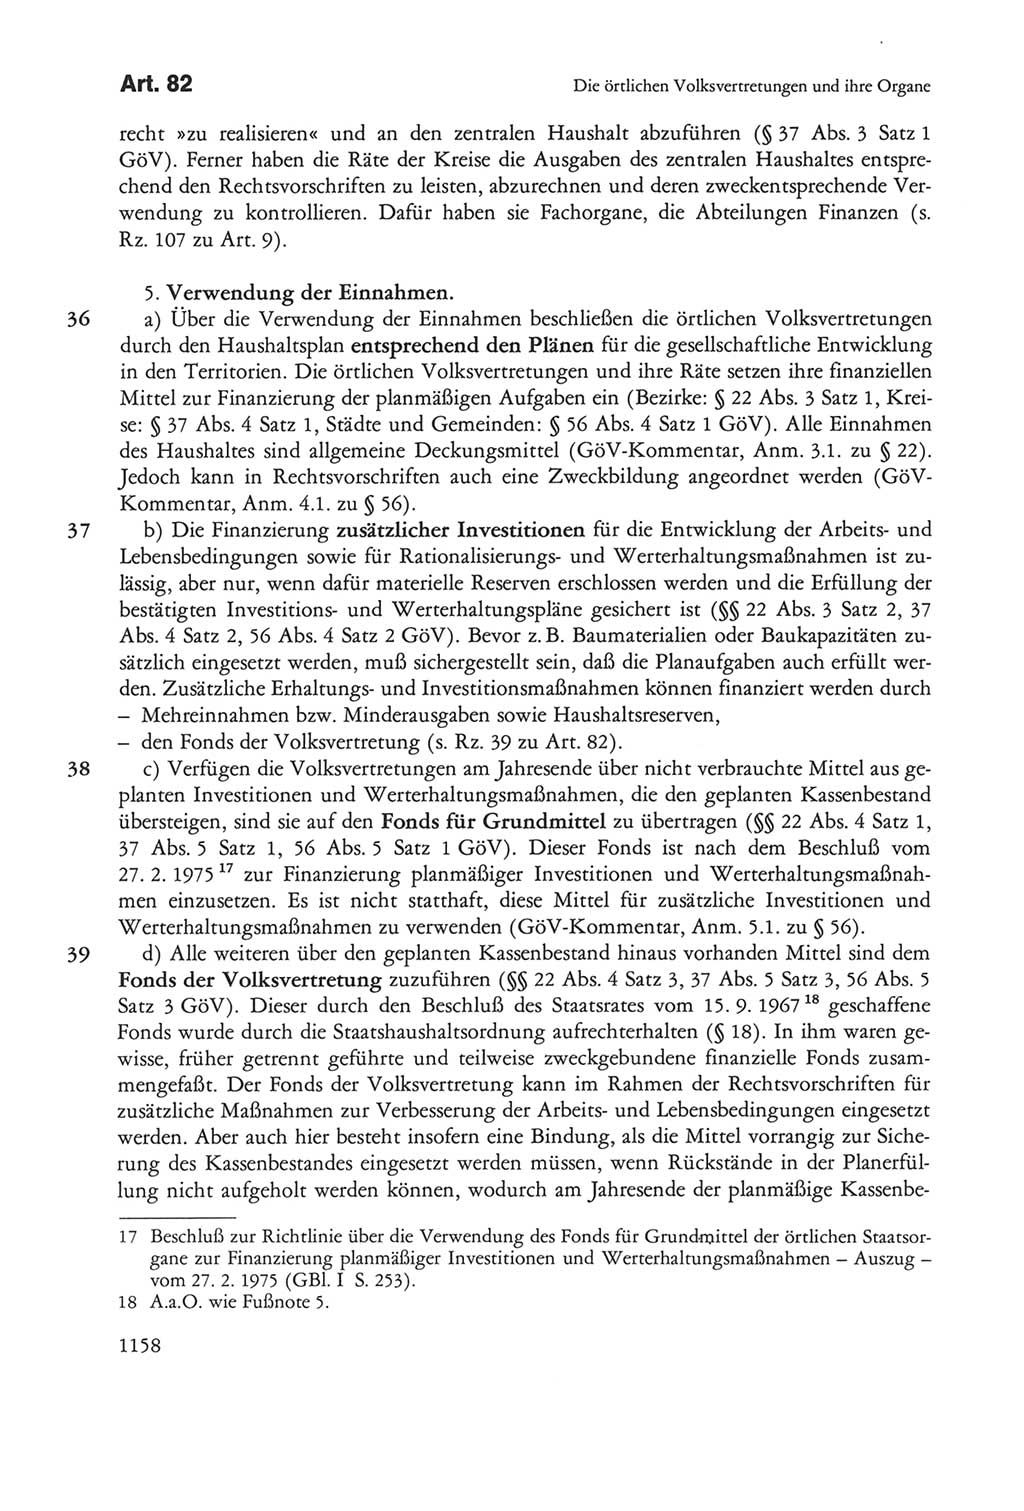 Die sozialistische Verfassung der Deutschen Demokratischen Republik (DDR), Kommentar 1982, Seite 1158 (Soz. Verf. DDR Komm. 1982, S. 1158)